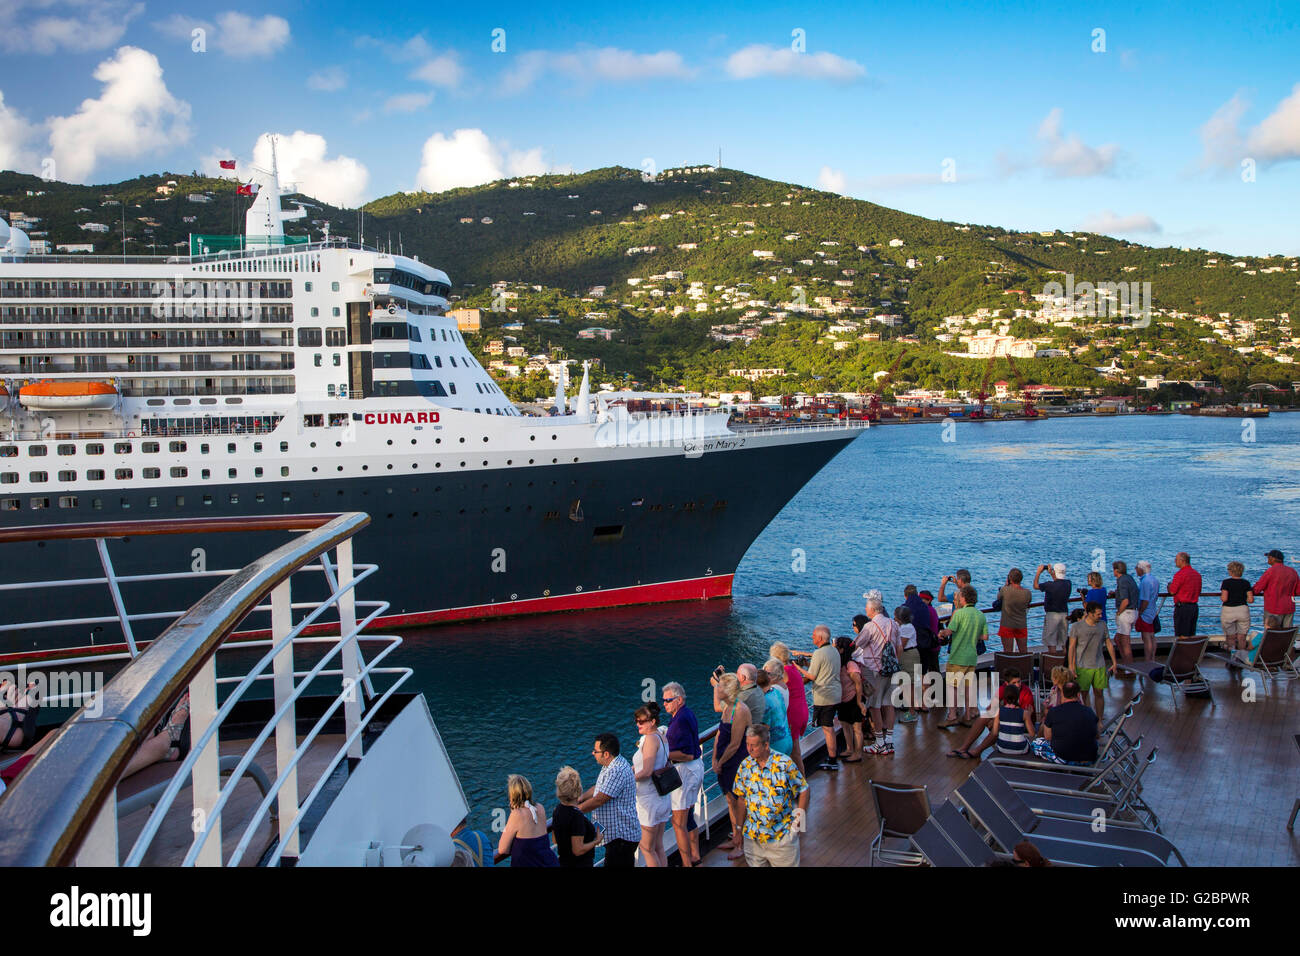 I passeggeri di crociera di ottenere una vista ravvicinata della Queen Mary 2 Cunard nave da crociera, Charlotte Amalie, san Tommaso, Isole Vergini Americane Foto Stock